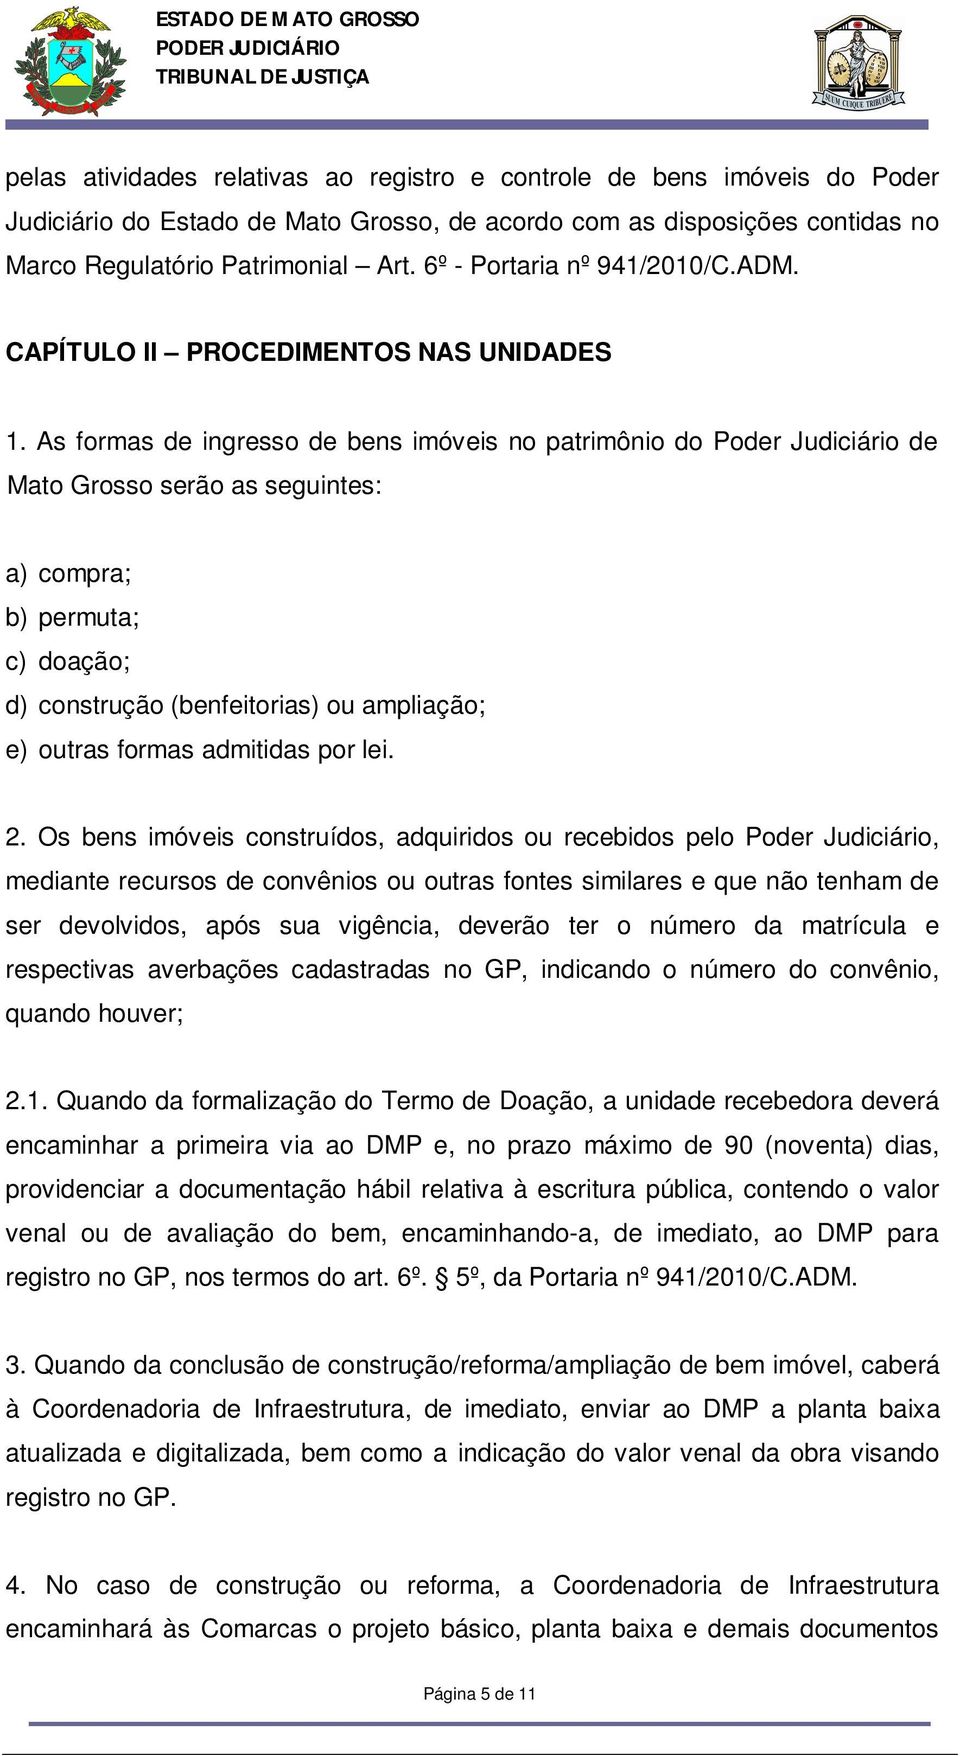 As formas de ingresso de bens imóveis no patrimônio do Poder Judiciário de Mato Grosso serão as seguintes: a) compra; b) permuta; c) doação; d) construção (benfeitorias) ou ampliação; e) outras